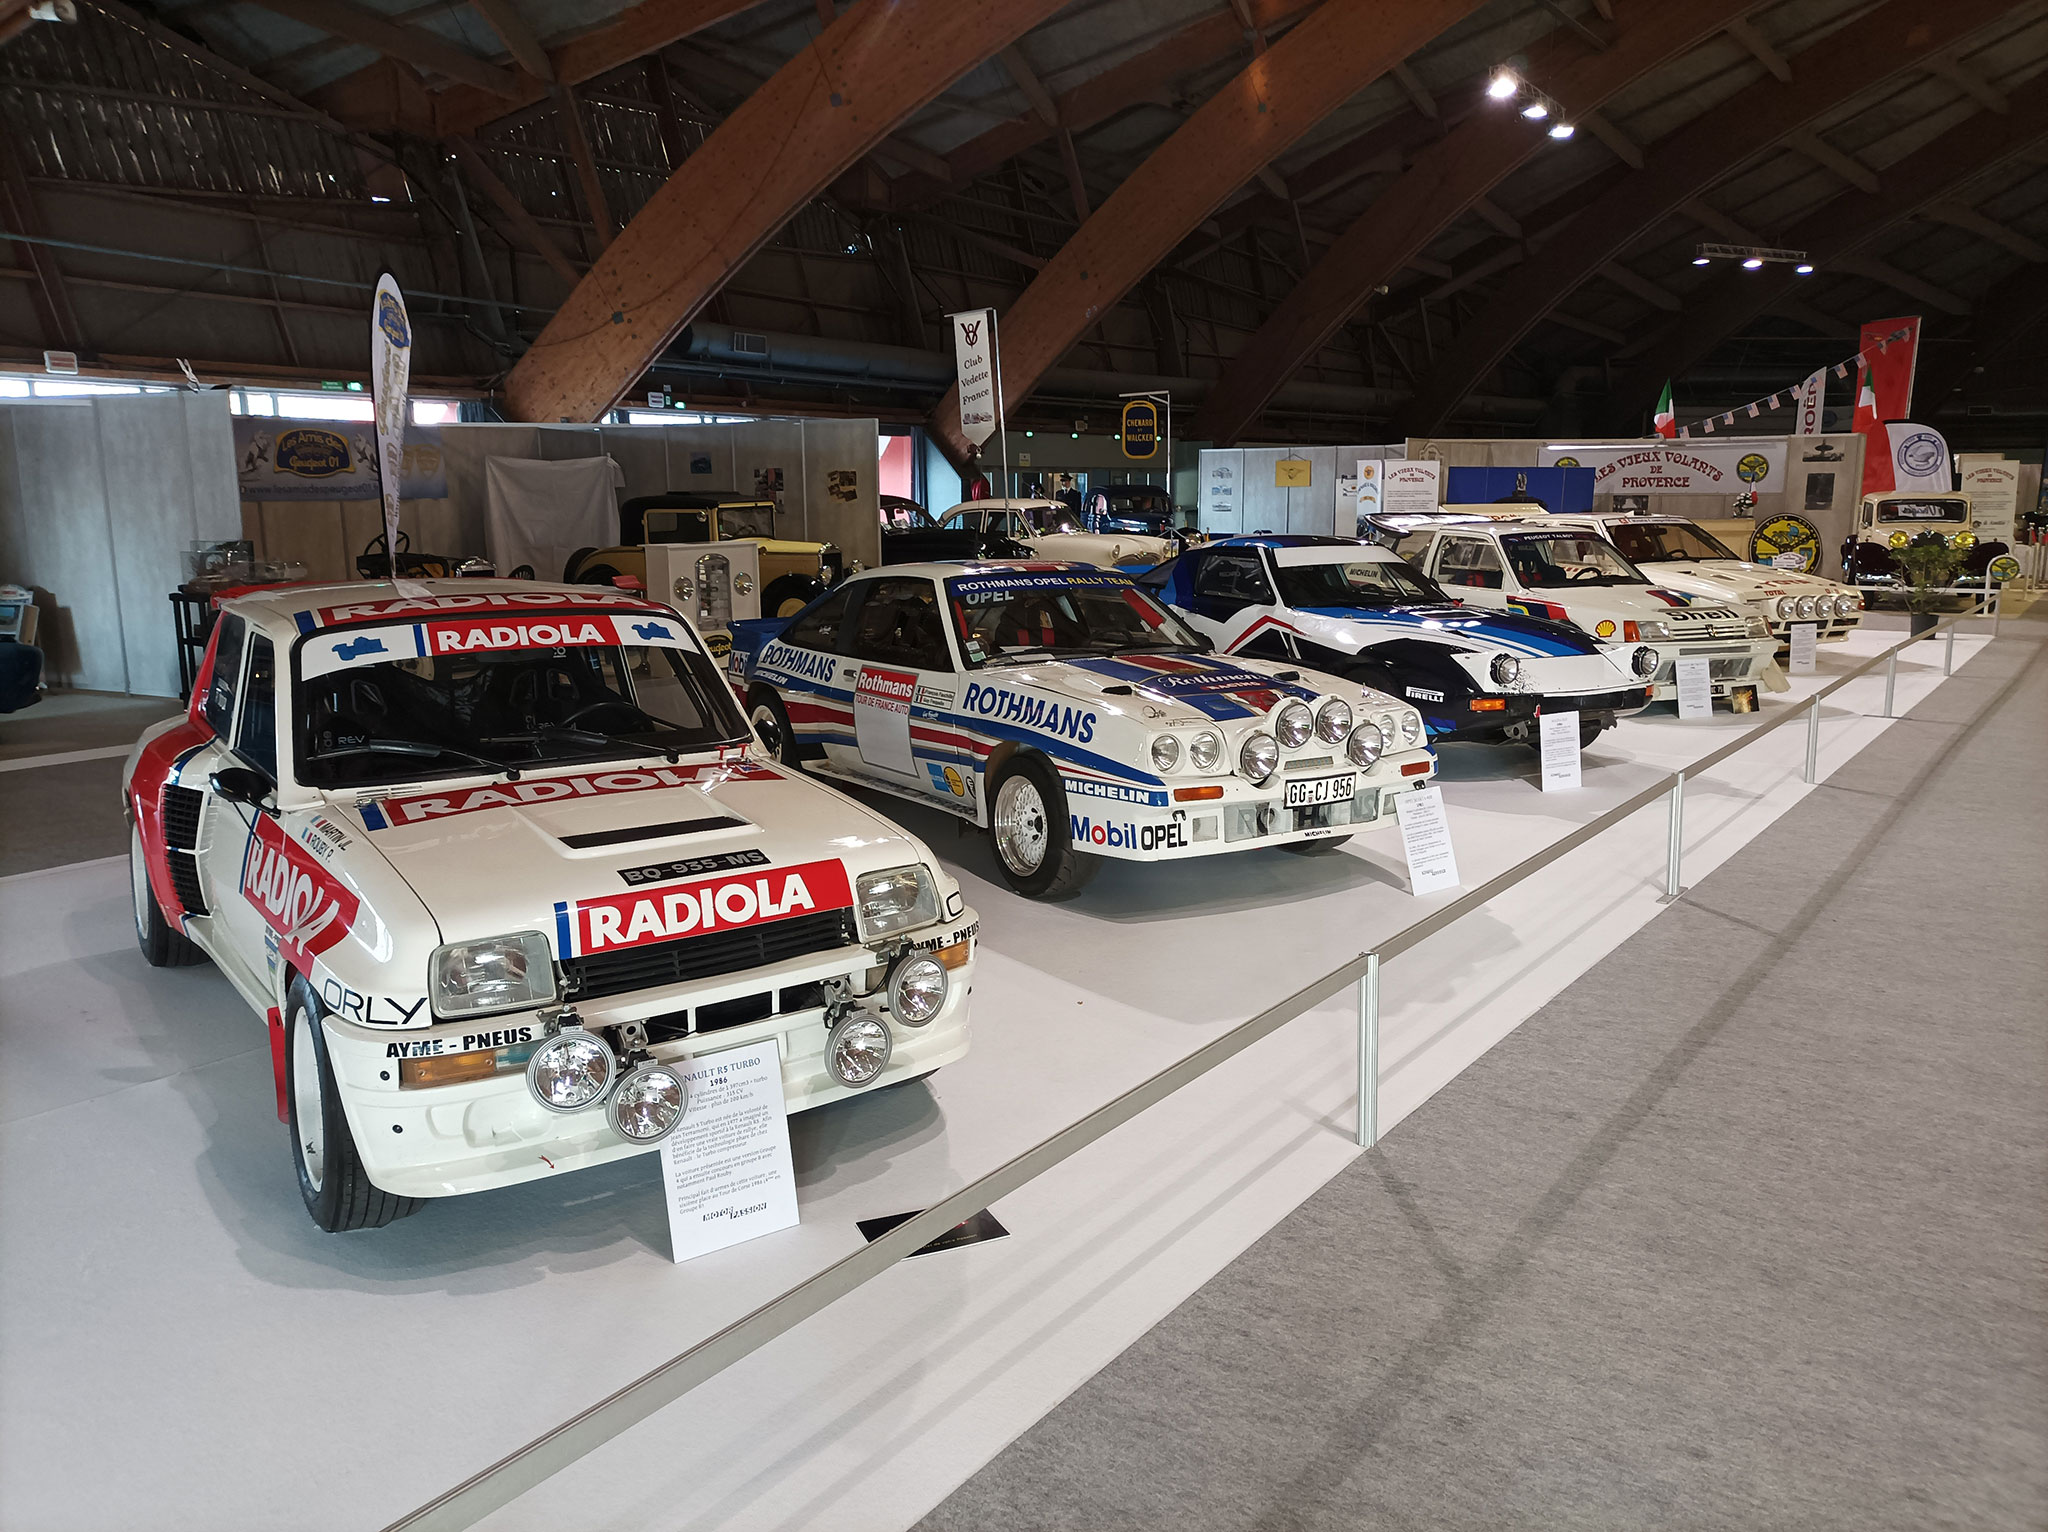 La Saga du Groupe B - Renault, Opel, Lancia, Peugeot et Citroën.